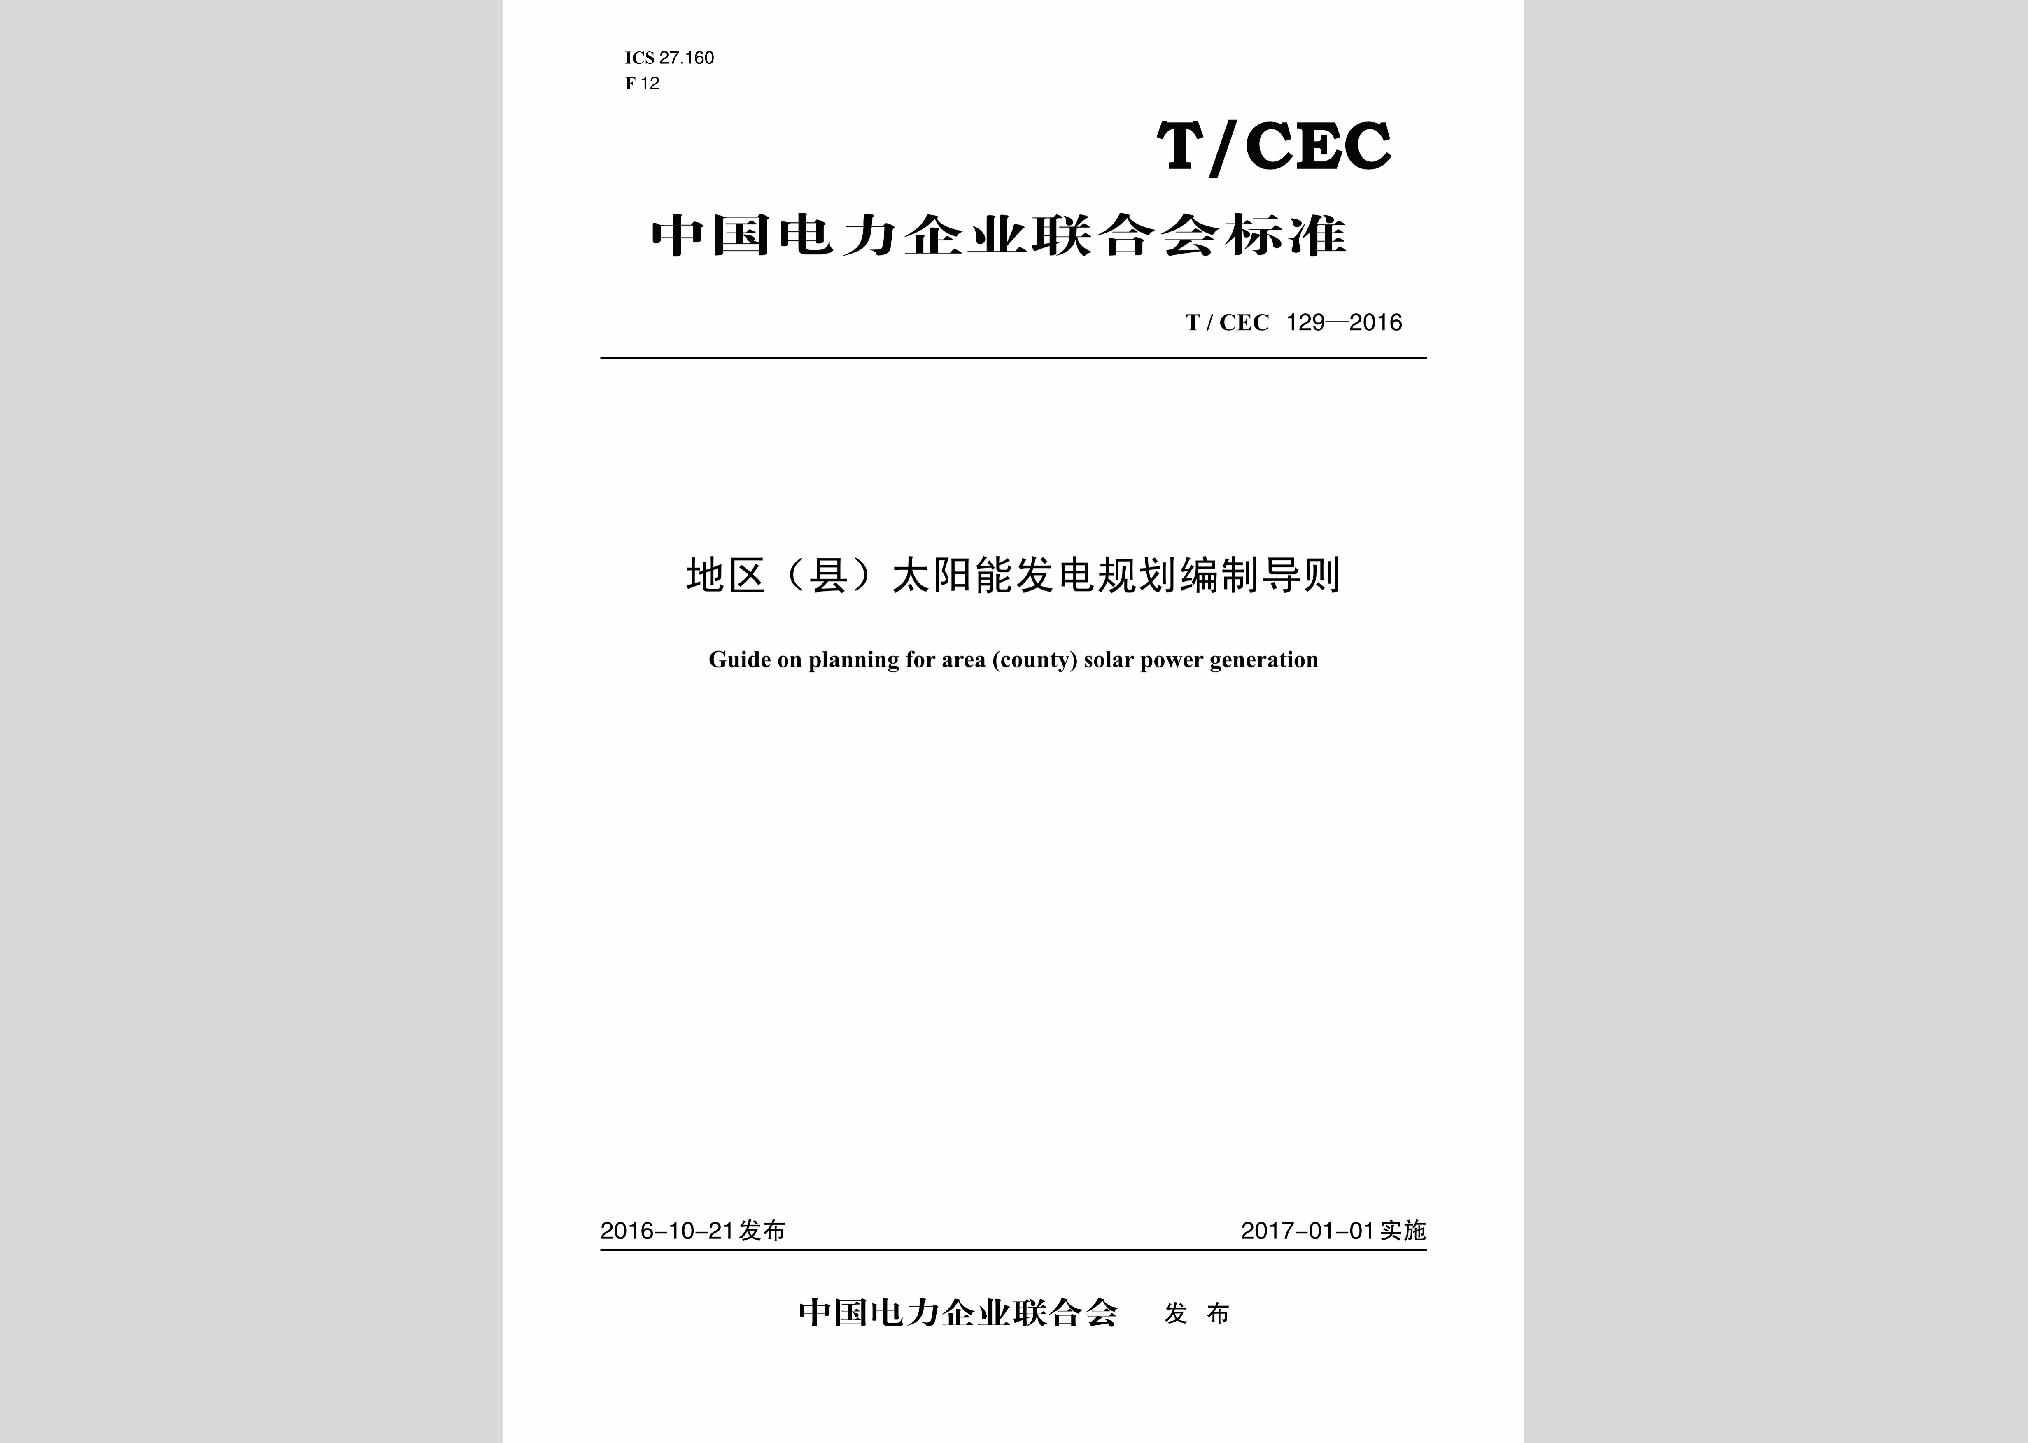 T/CEC129-2016：地区(县)太阳能发电规划编制导则